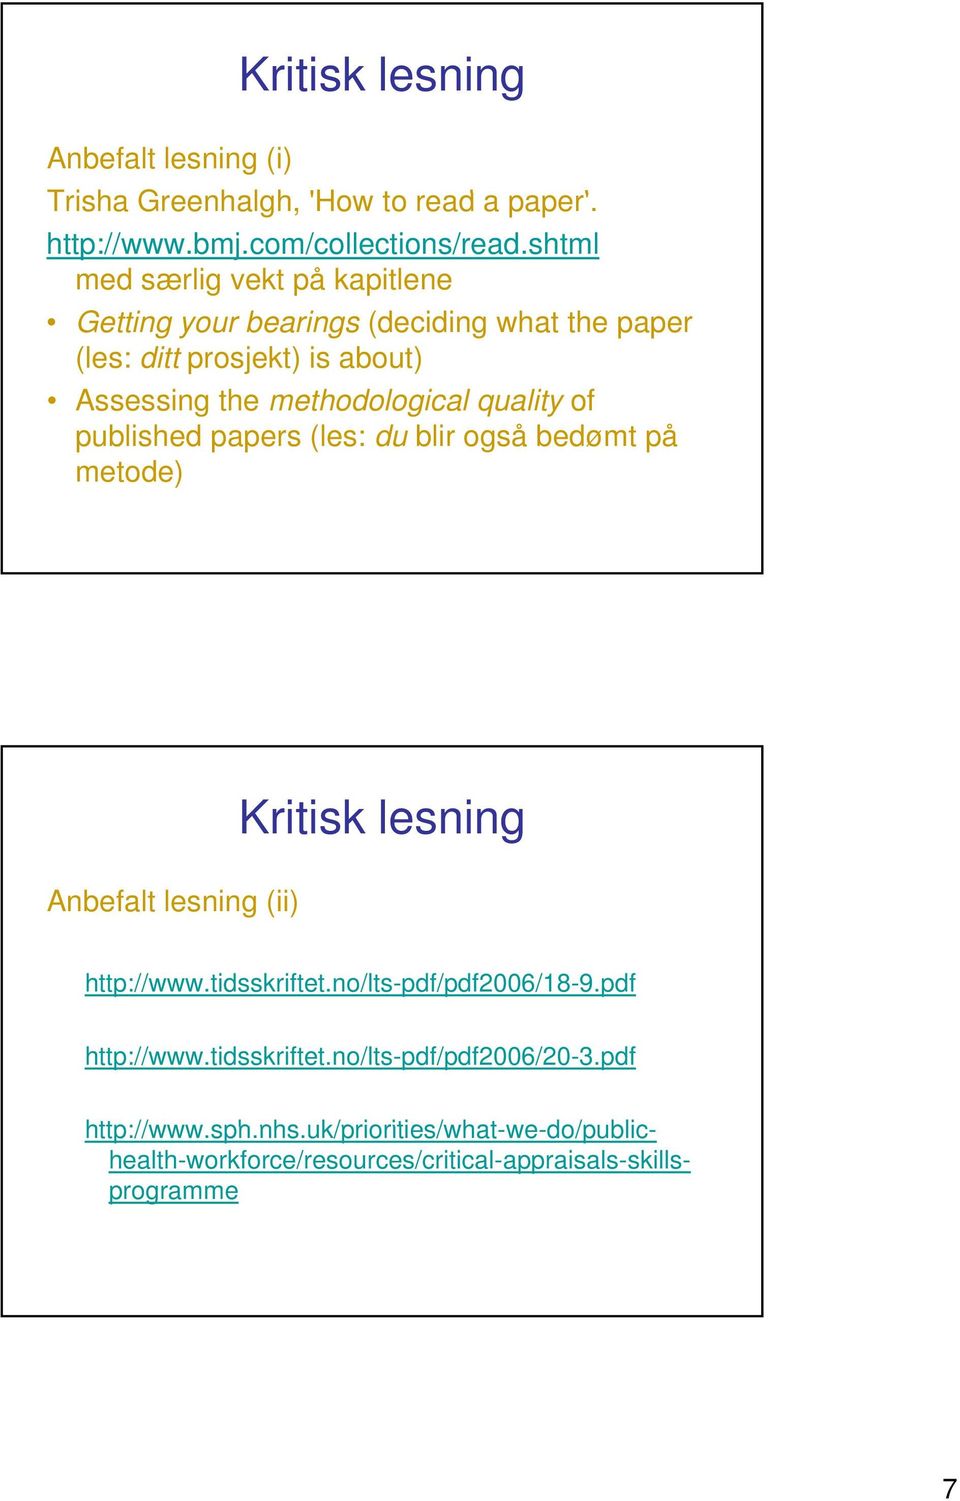 quality of published papers (les: du blir også bedømt på metode) Anbefalt lesning (ii) http://www.tidsskriftet.no/lts-pdf/pdf2006/18-9.